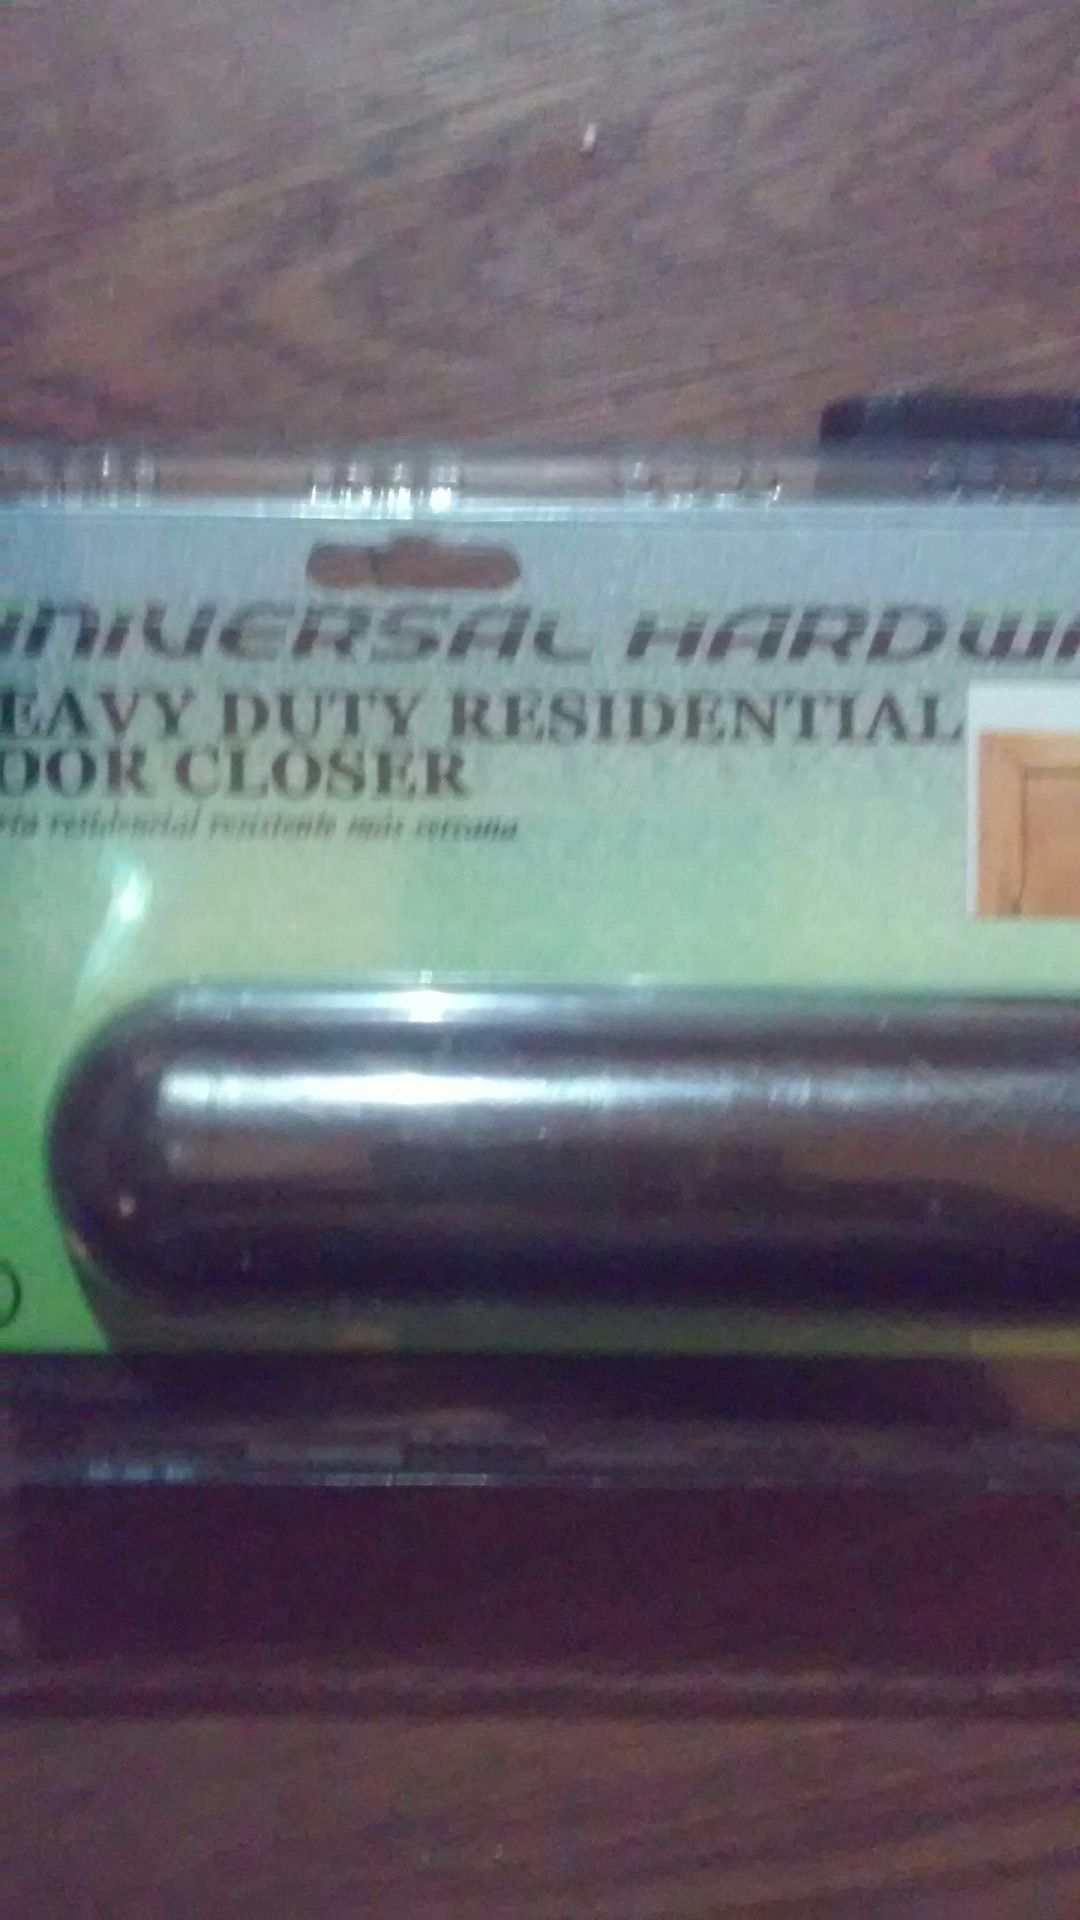 Door closser